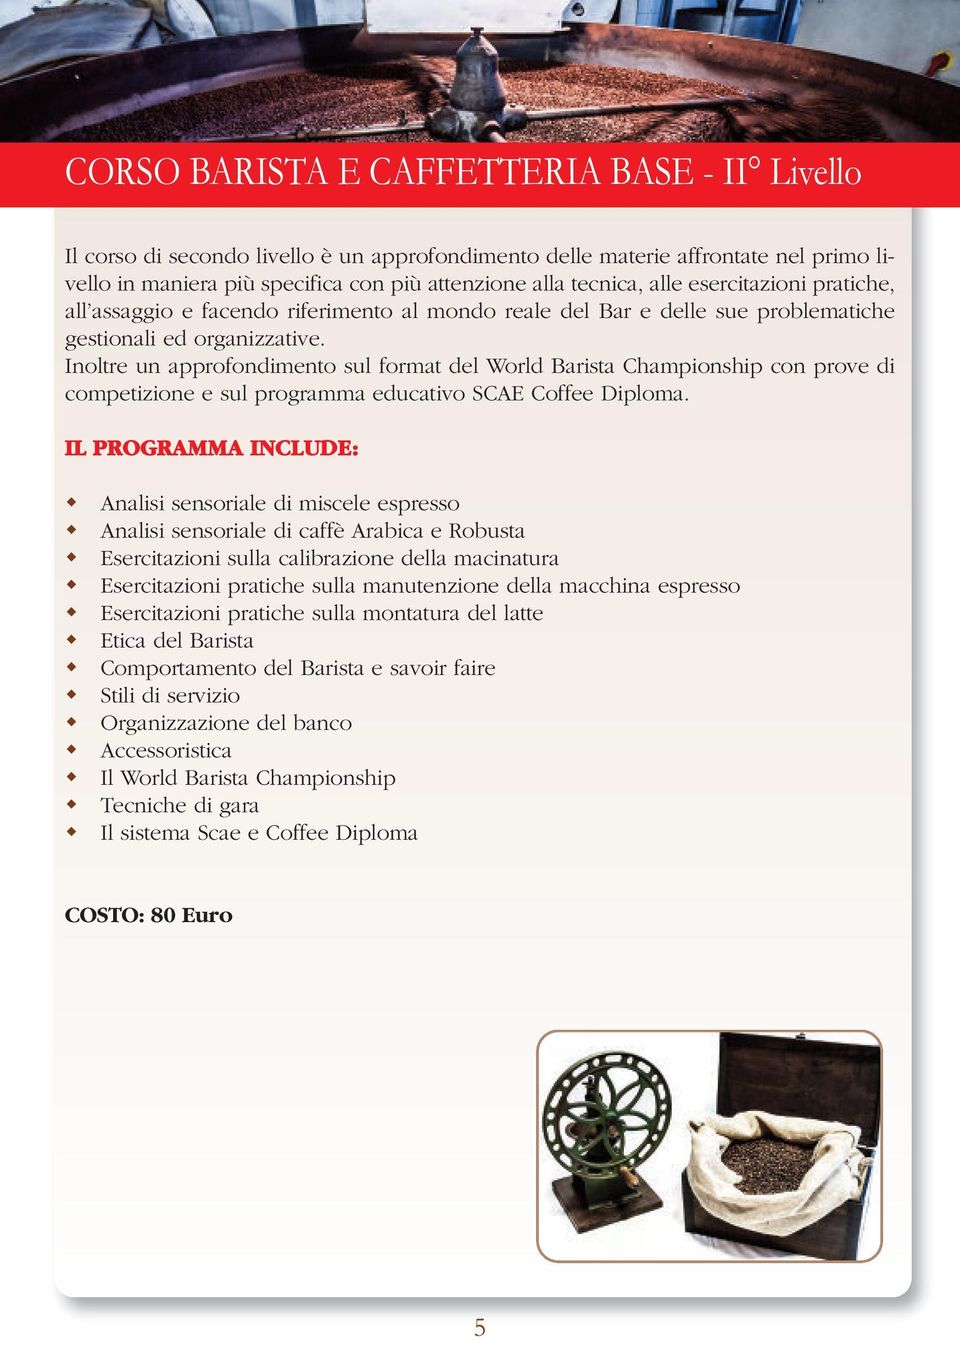 Inoltre un approfondimento sul format del World Barista Championship con prove di competizione e sul programma educativo SCAE Coffee Diploma.